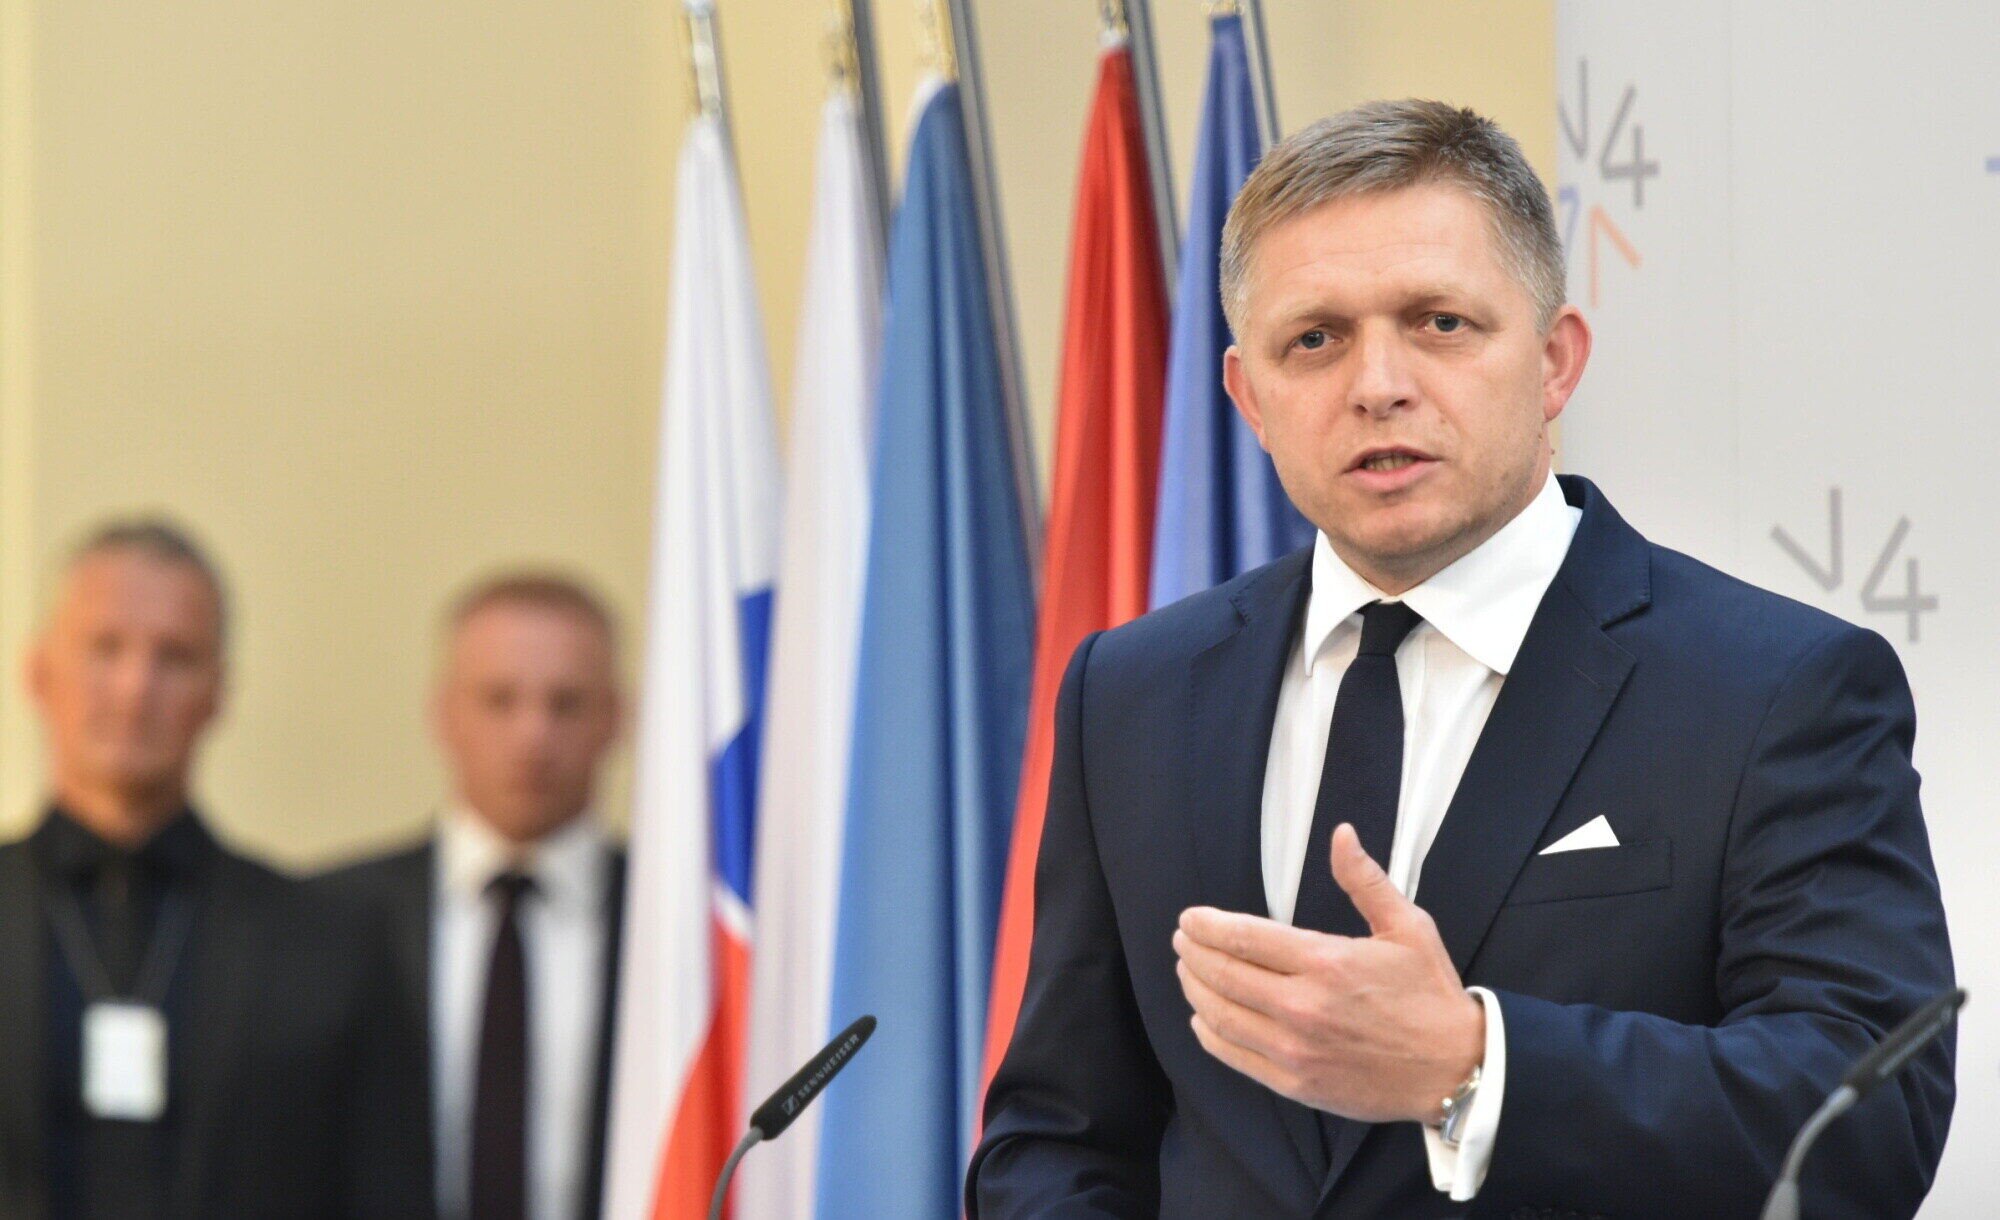 Slovensko zná novou podobu vlády. Smer získá post premiéra šest ministerstev